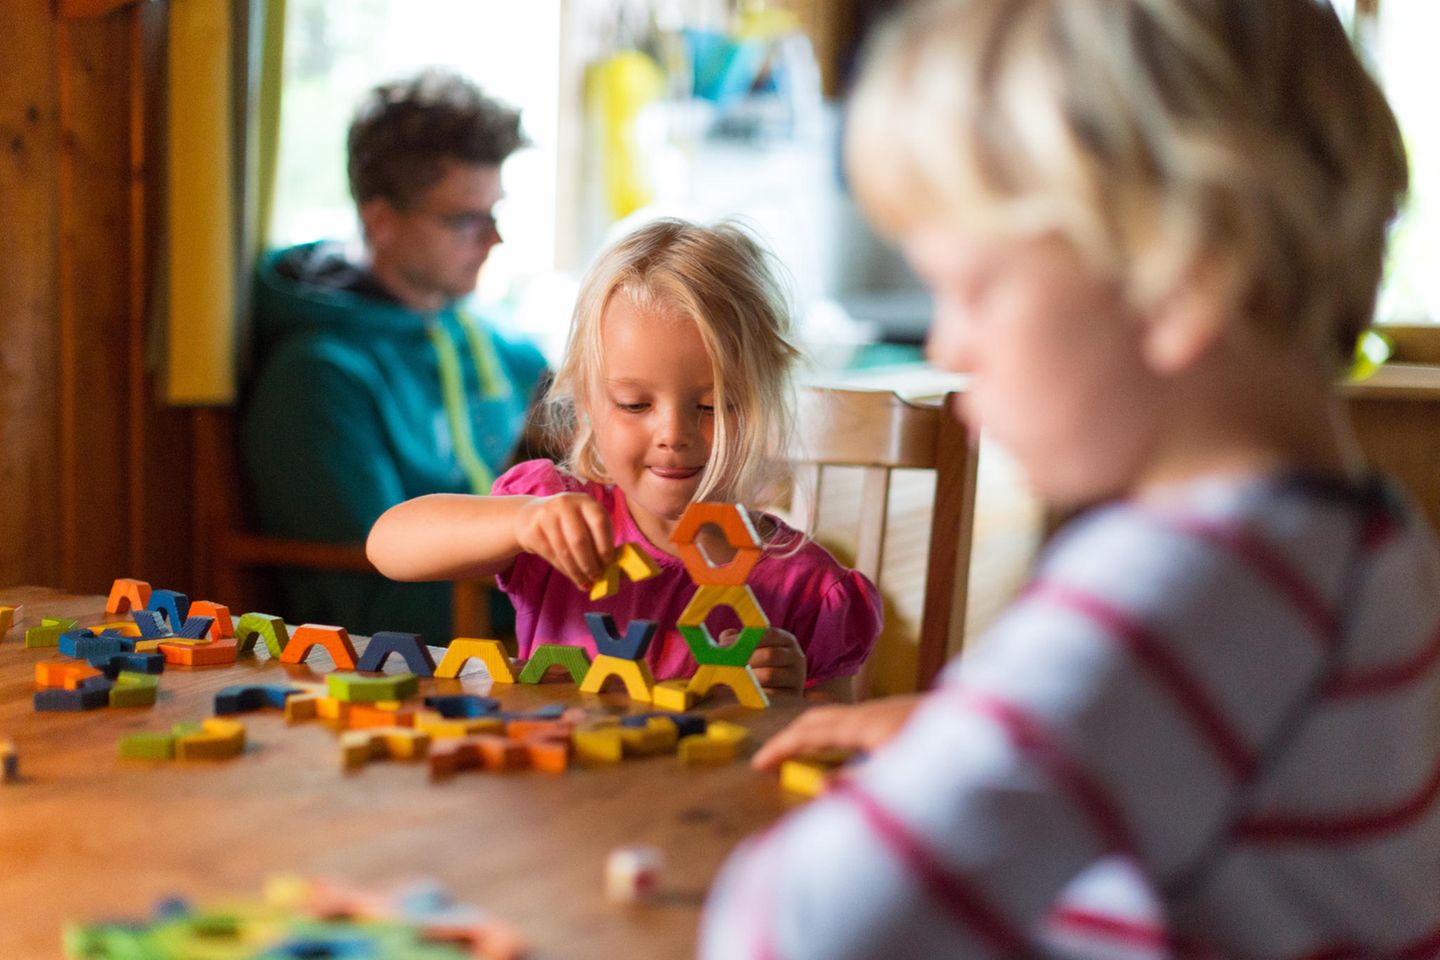 Spielzeug ab 5 Jahren: Mädchen am Küchentisch mit Bruder stapelt konzentriert bunte Bauklötze.